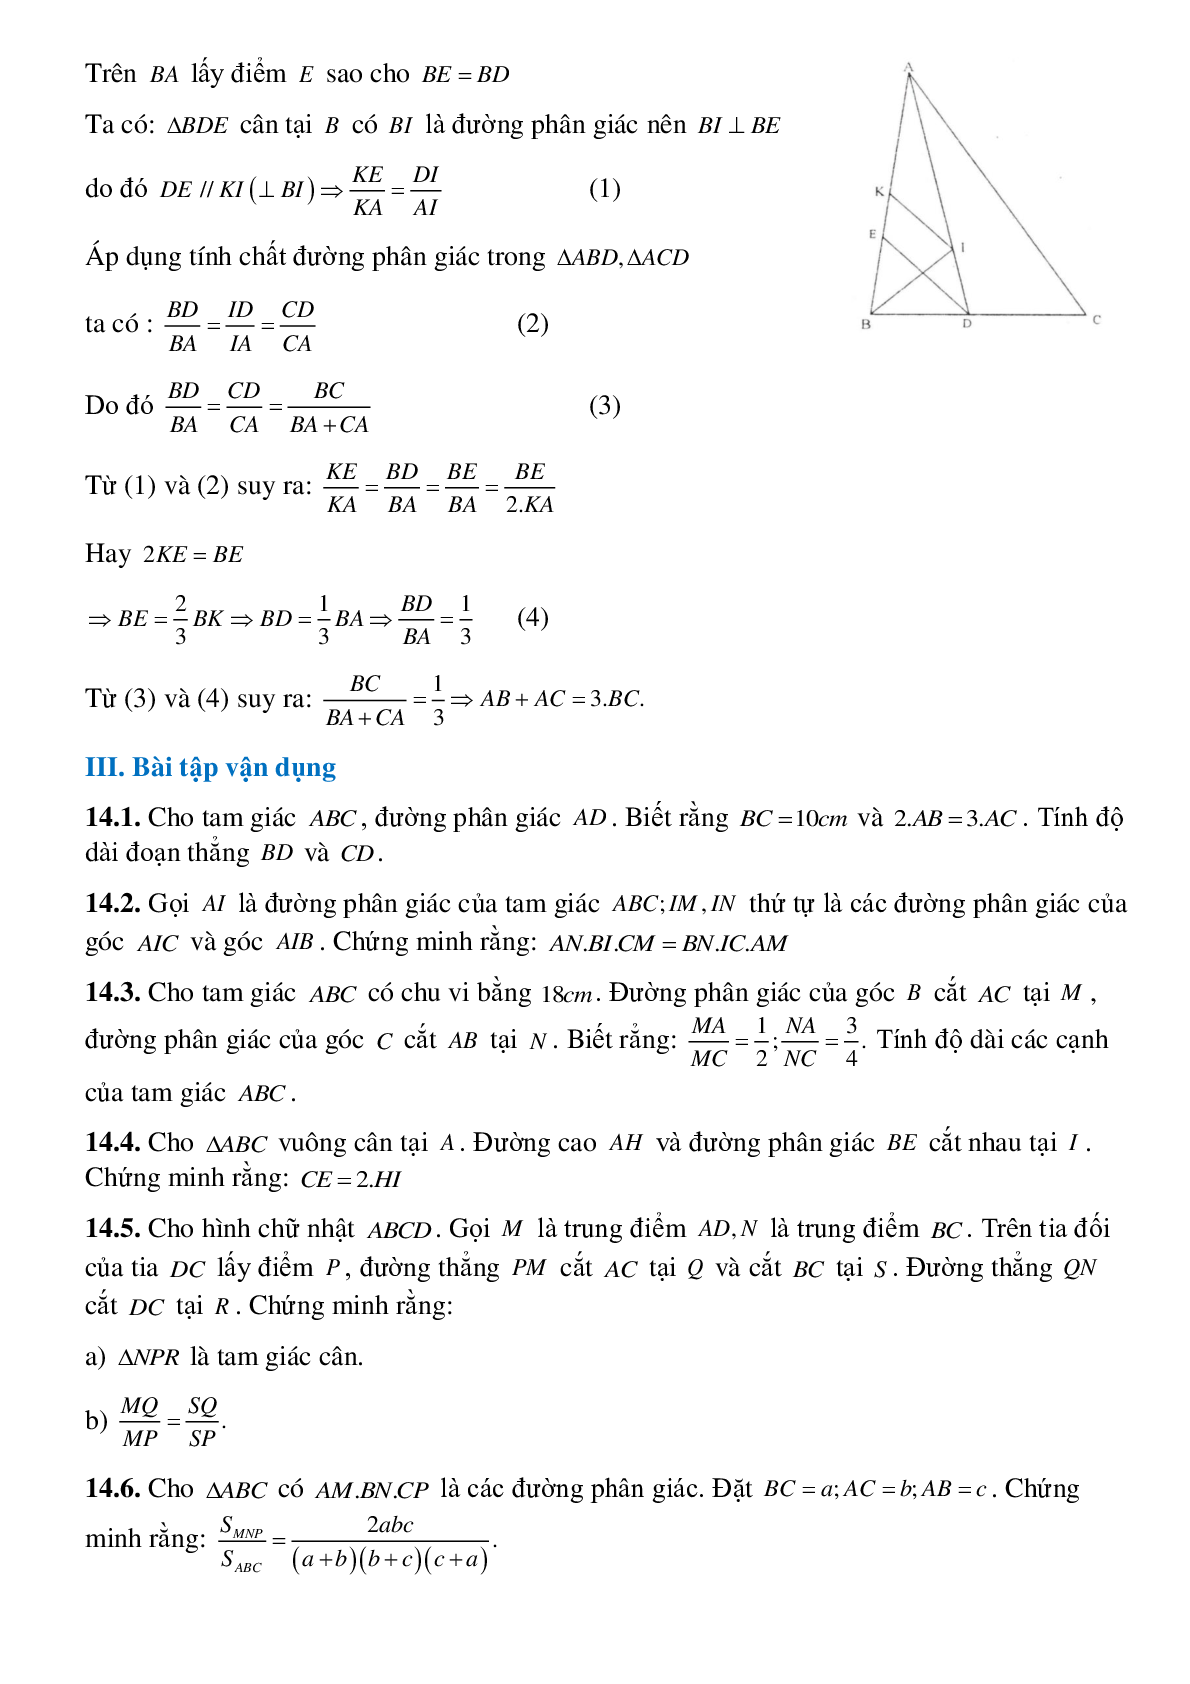 Tính chất đường phân giác của tam giác (trang 8)